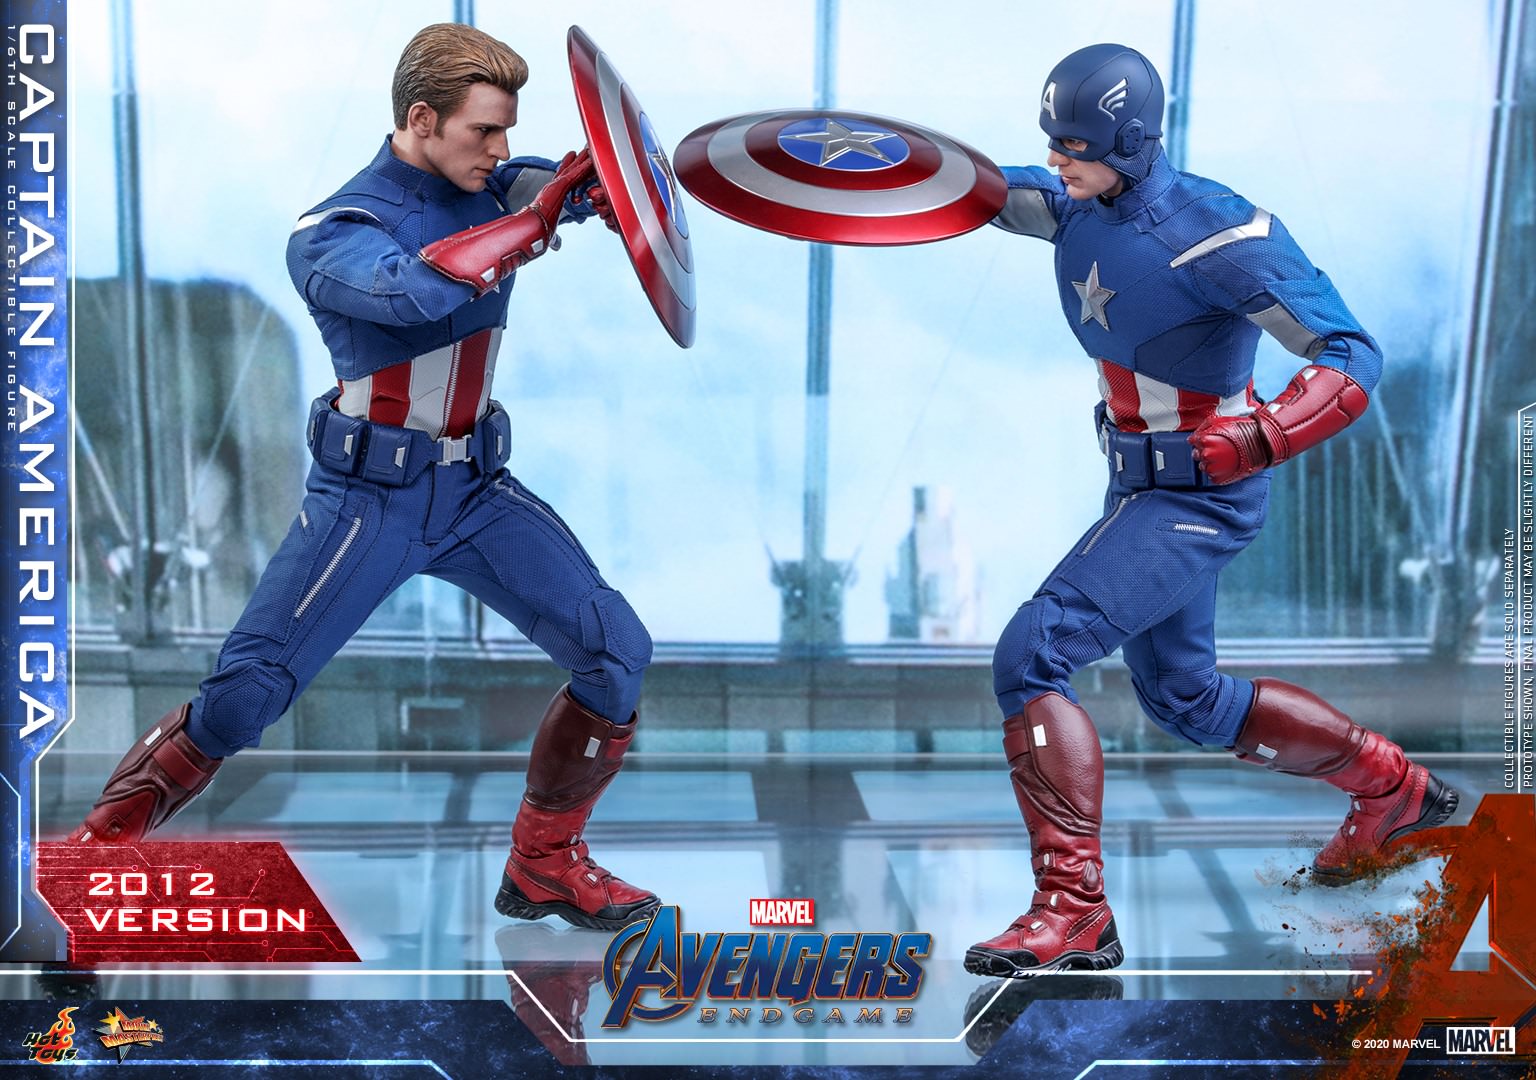 Captain America 2012 - Hot Toys Avengers: Endgame